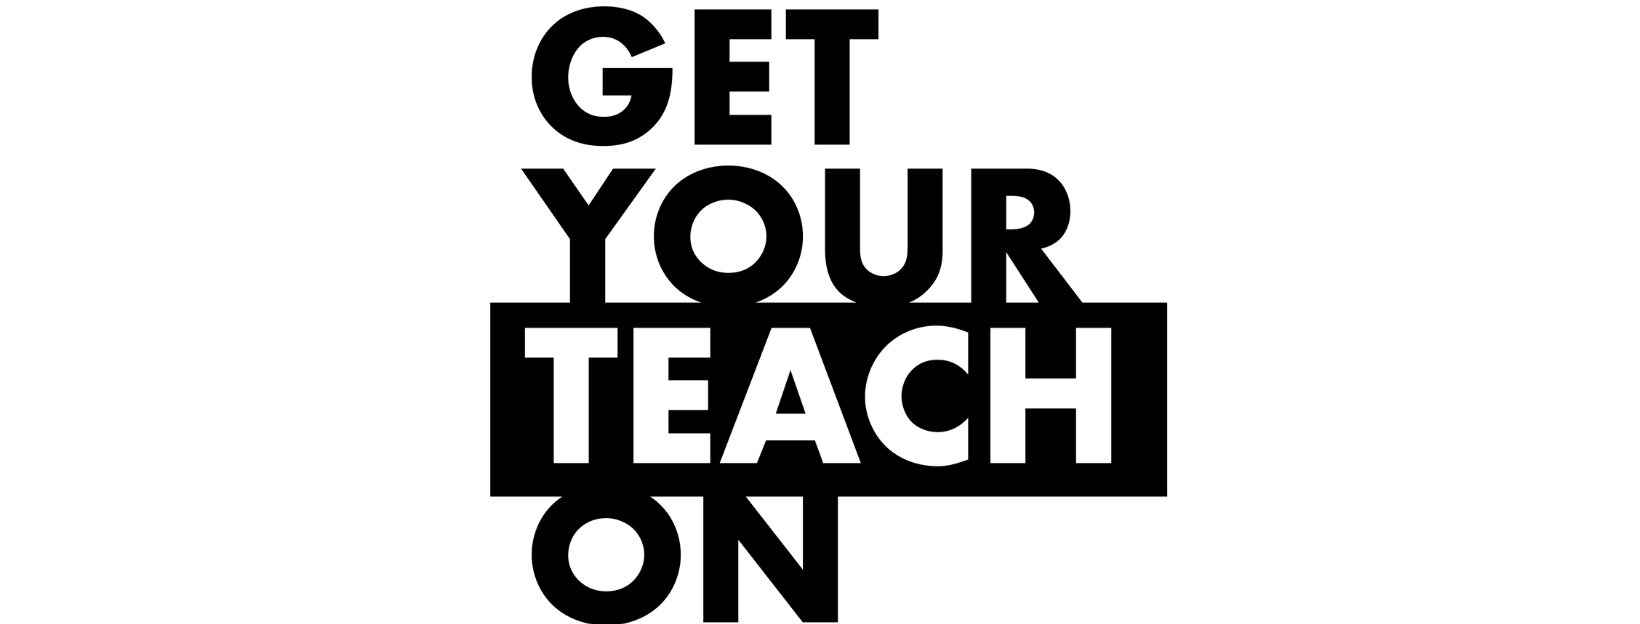 Get Your Teach On logo